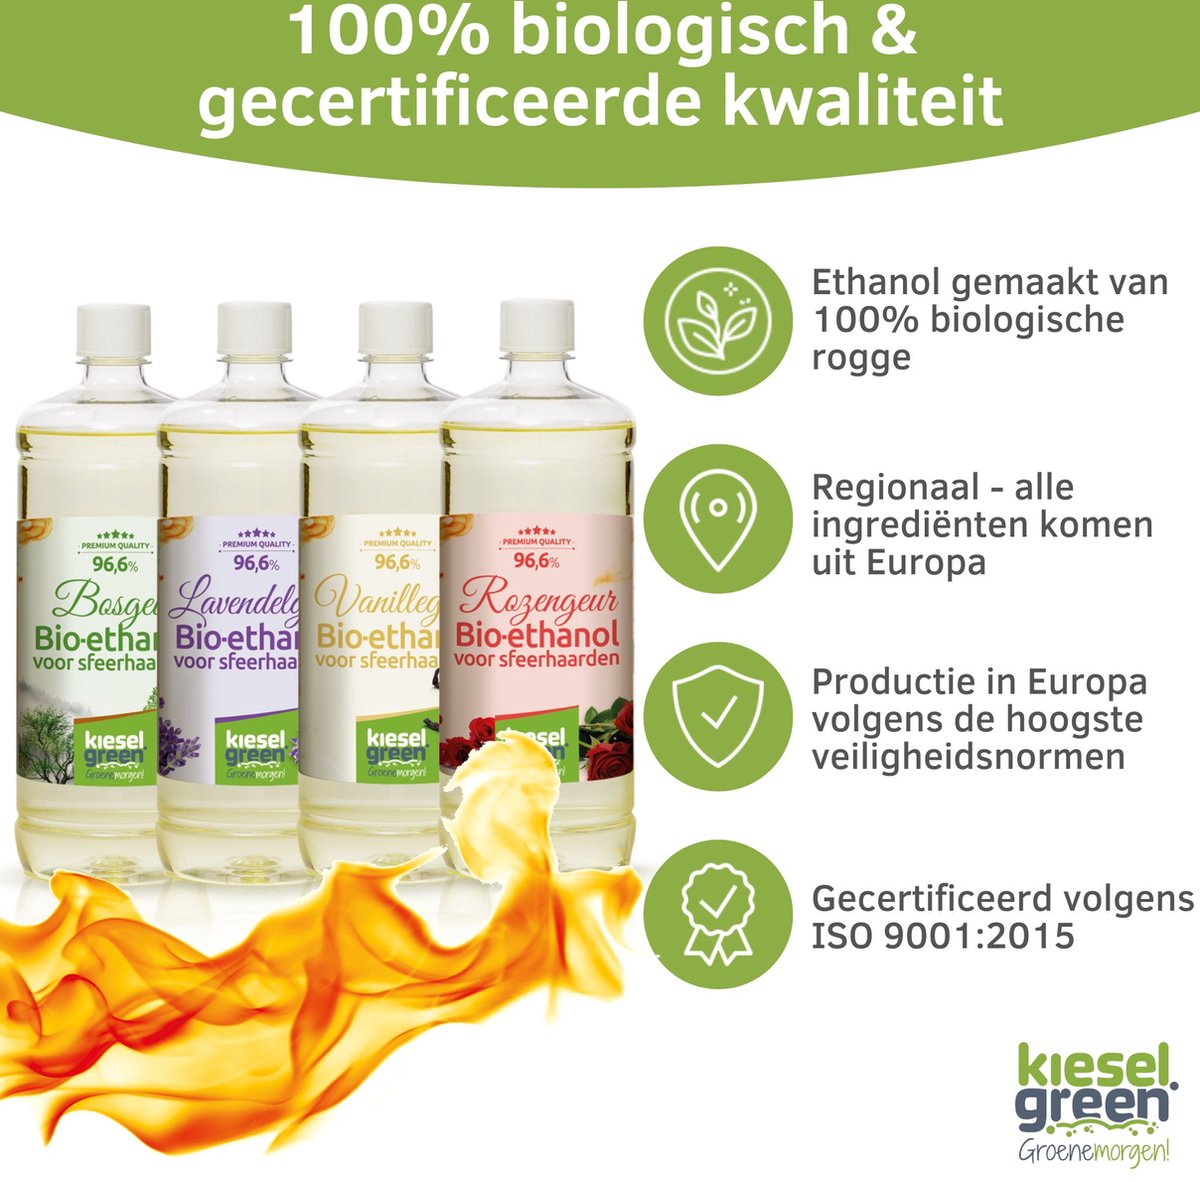 KieselGreen 12 Liter Bio-Ethanol Aromamix (Vanille, Rozen, Lavendel, Geurloos) - Bioethanol 96.6%, Veilig voor Sfeerhaarden en Tafelhaarden, Milieuvriendelijk - Premium Kwaliteit Ethanol voor Binnen en Buiten